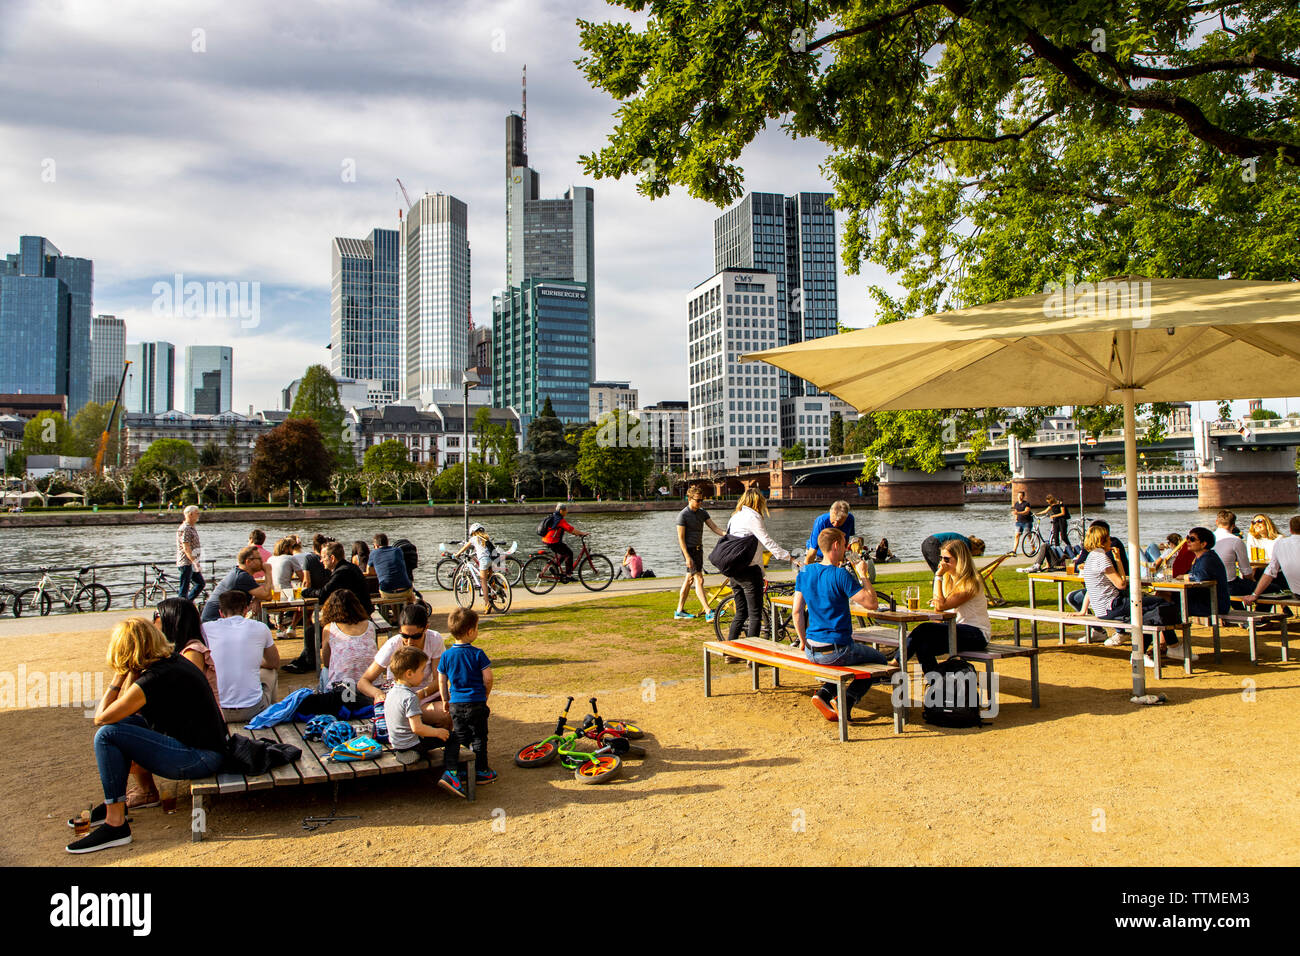 Frankfurt am Main, Blick auf die Skyline der Innenstadt vom Linken Mainufer, Uferweg, Biergarten, chillen Leute am Ufer, Foto Stock